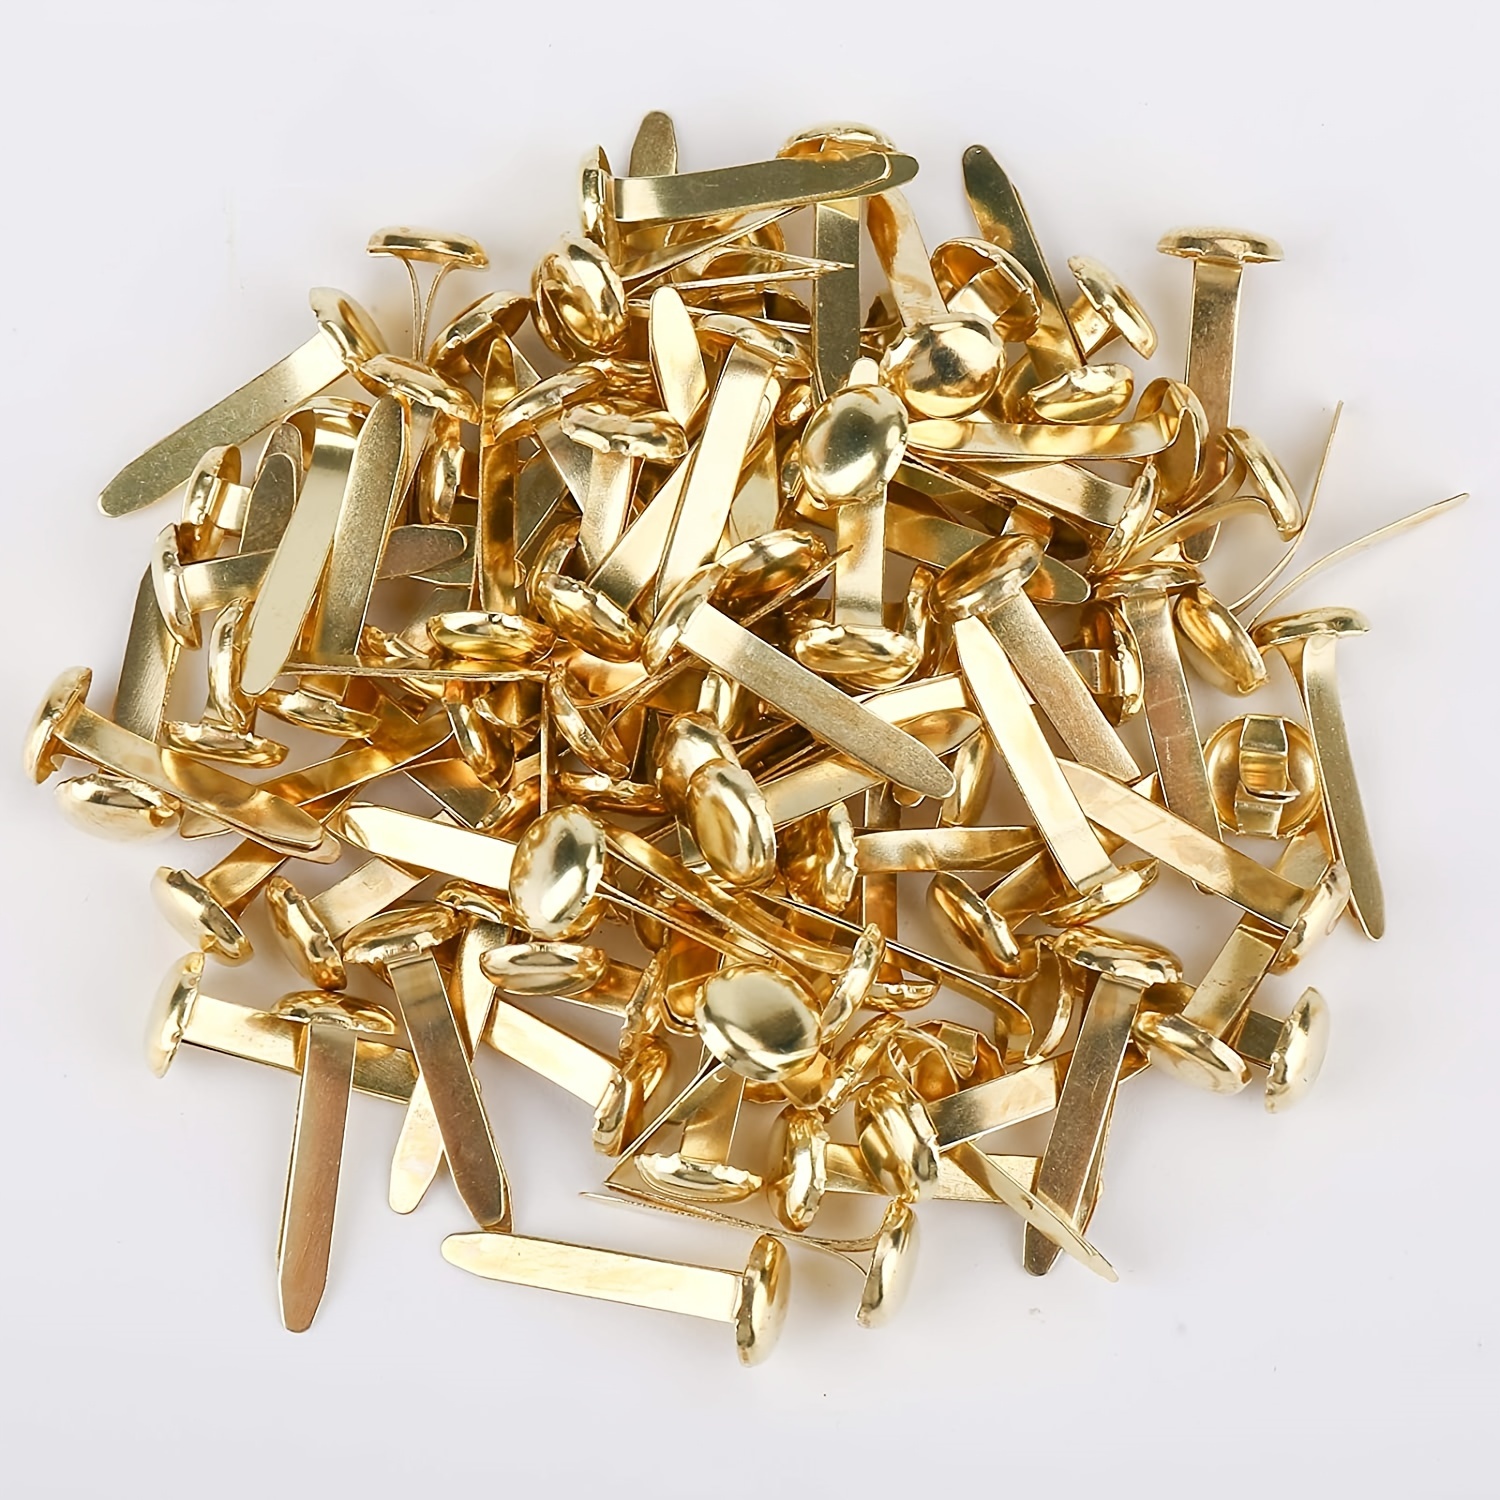 100PCS Brads Paper Fasteners Brass Round Mini Metal Brads